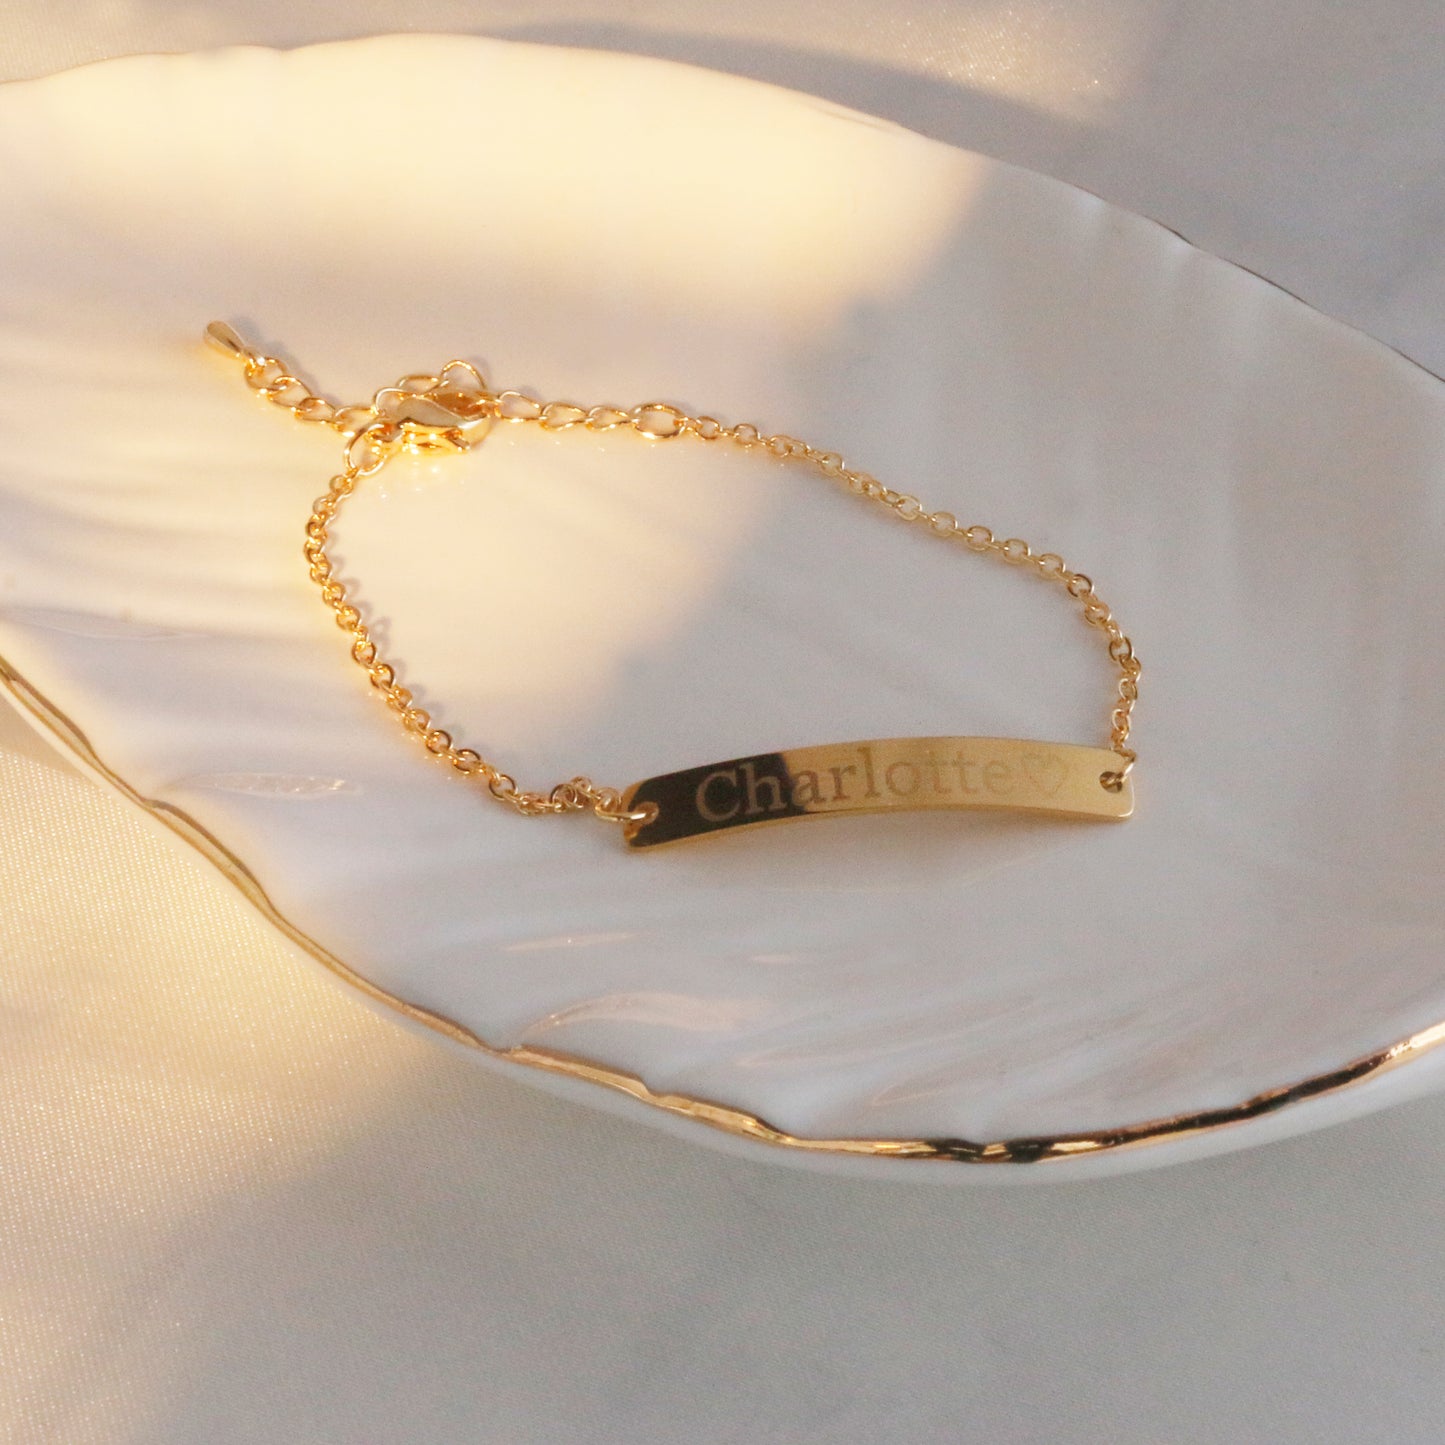 Personalized Nameplate Bracelet - Minimalist simple jewelry